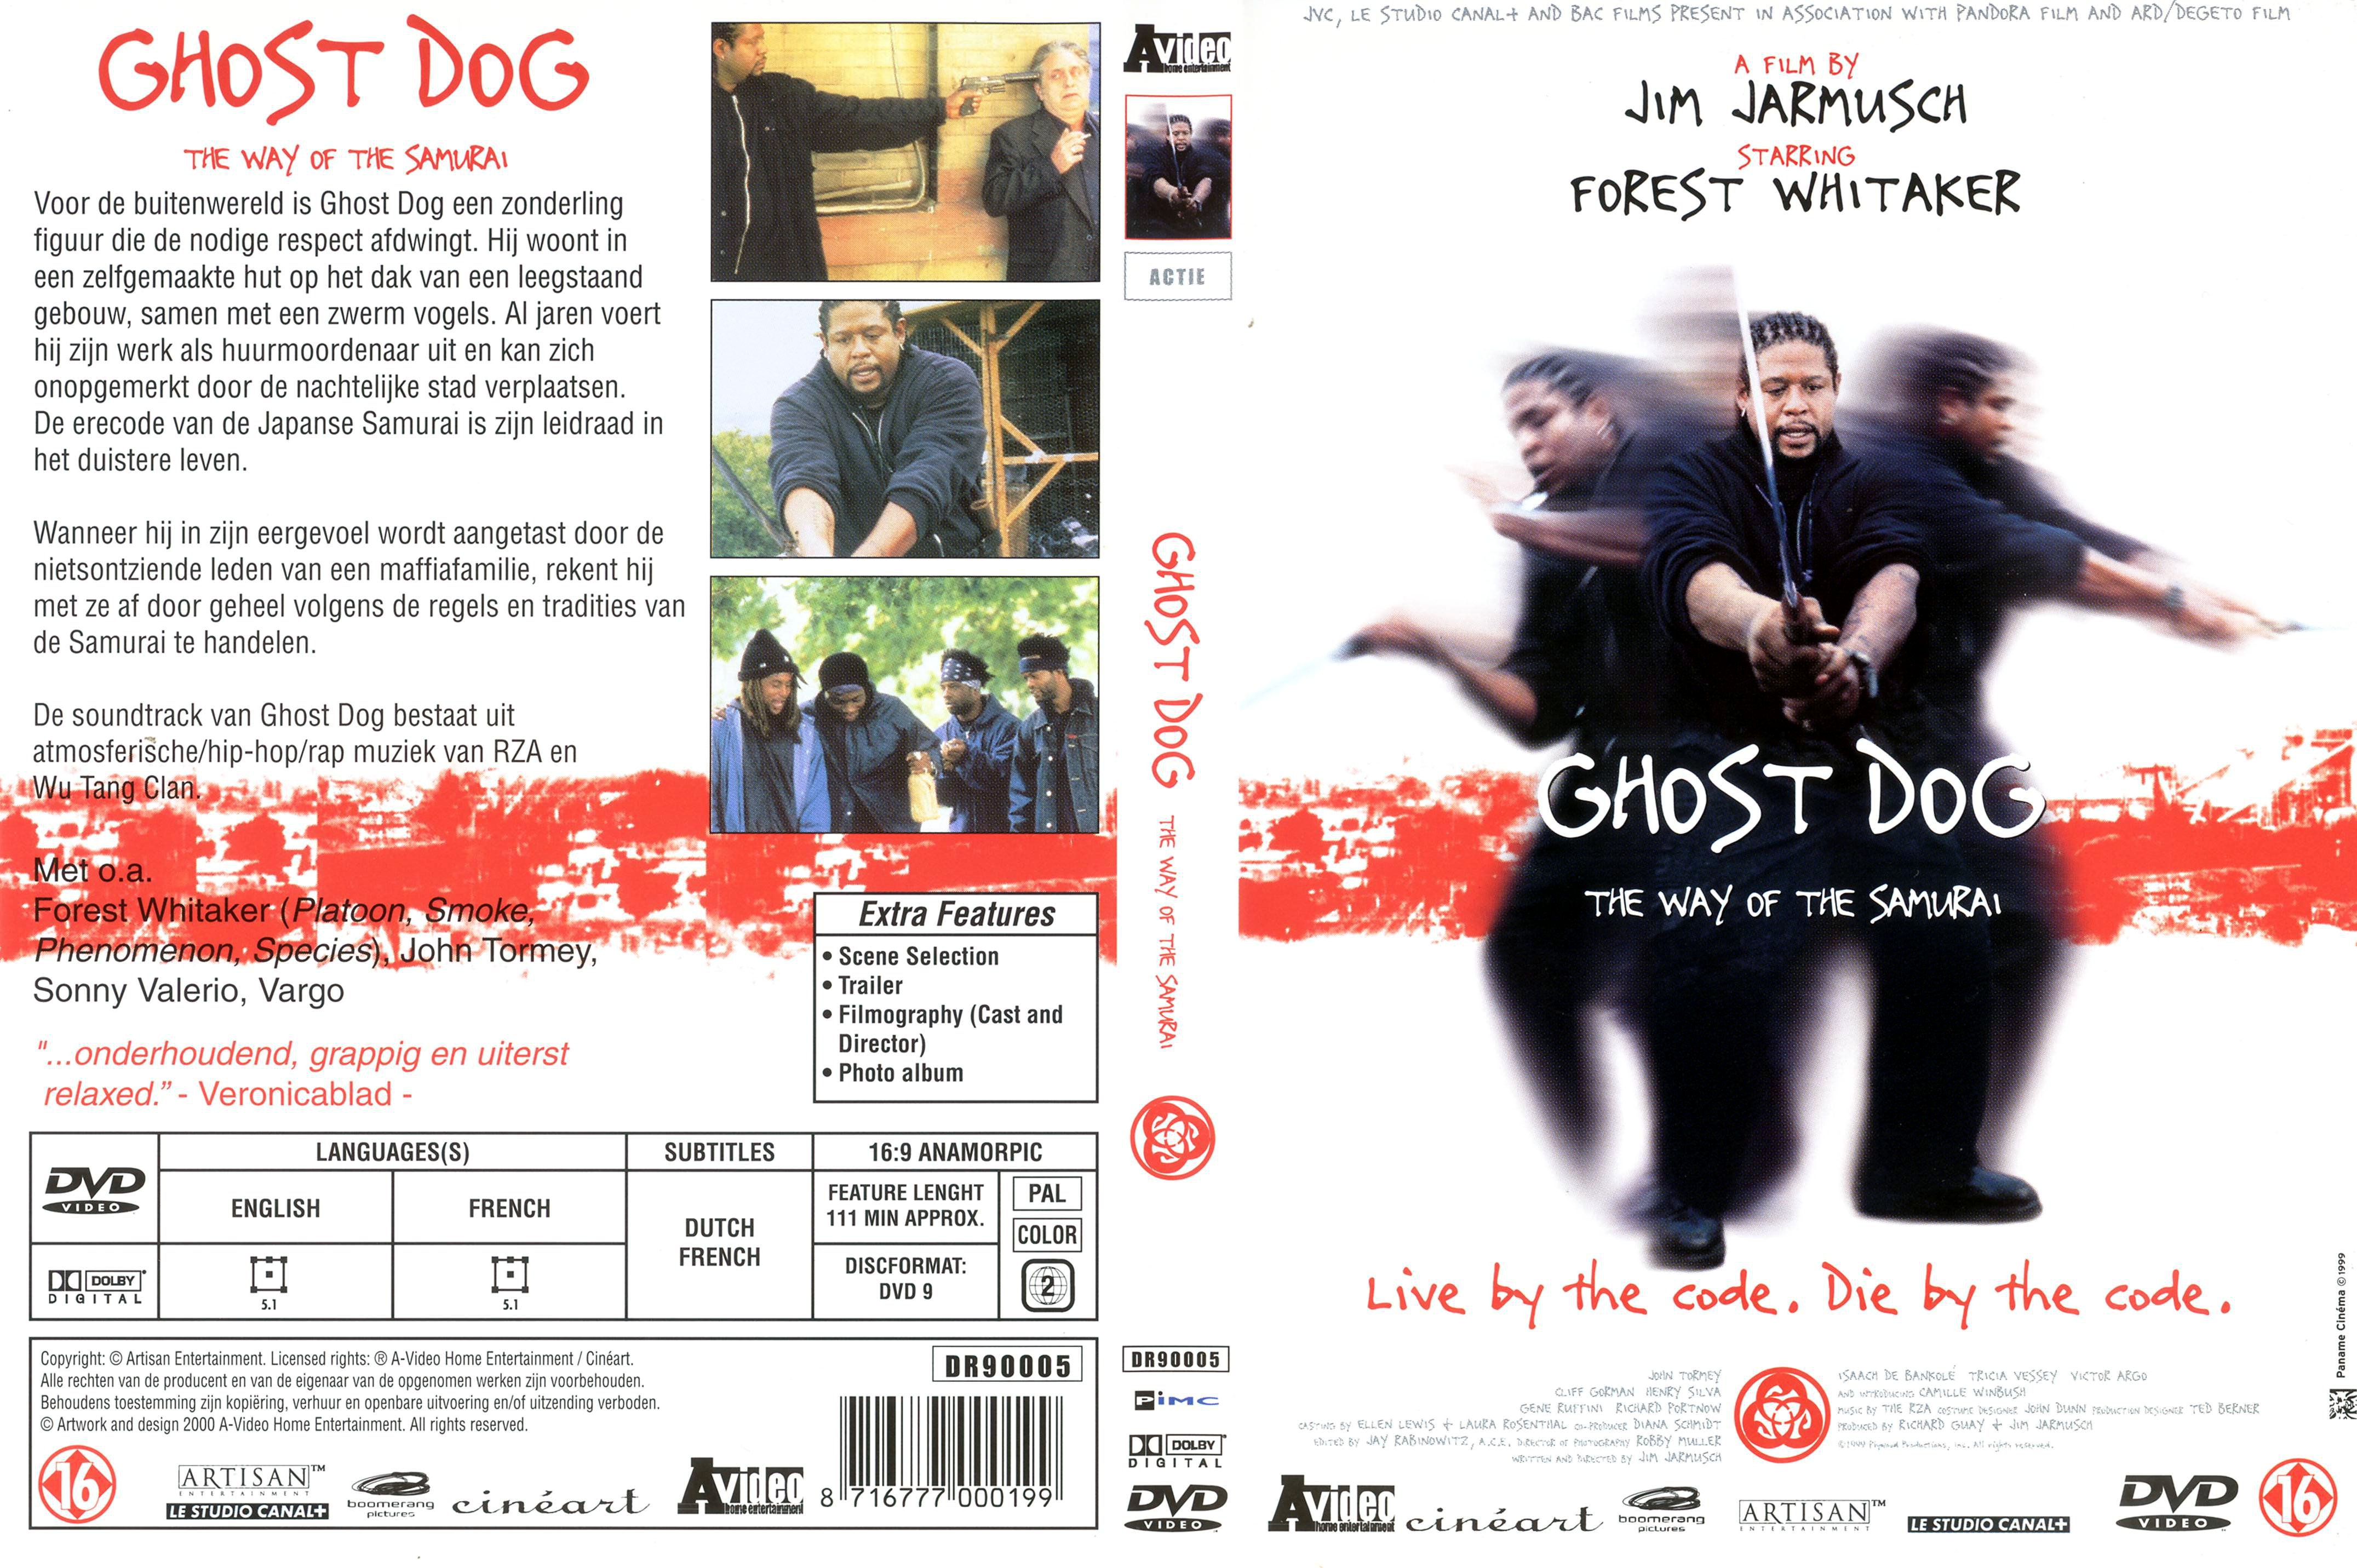 Jaquette DVD Ghost dog v3